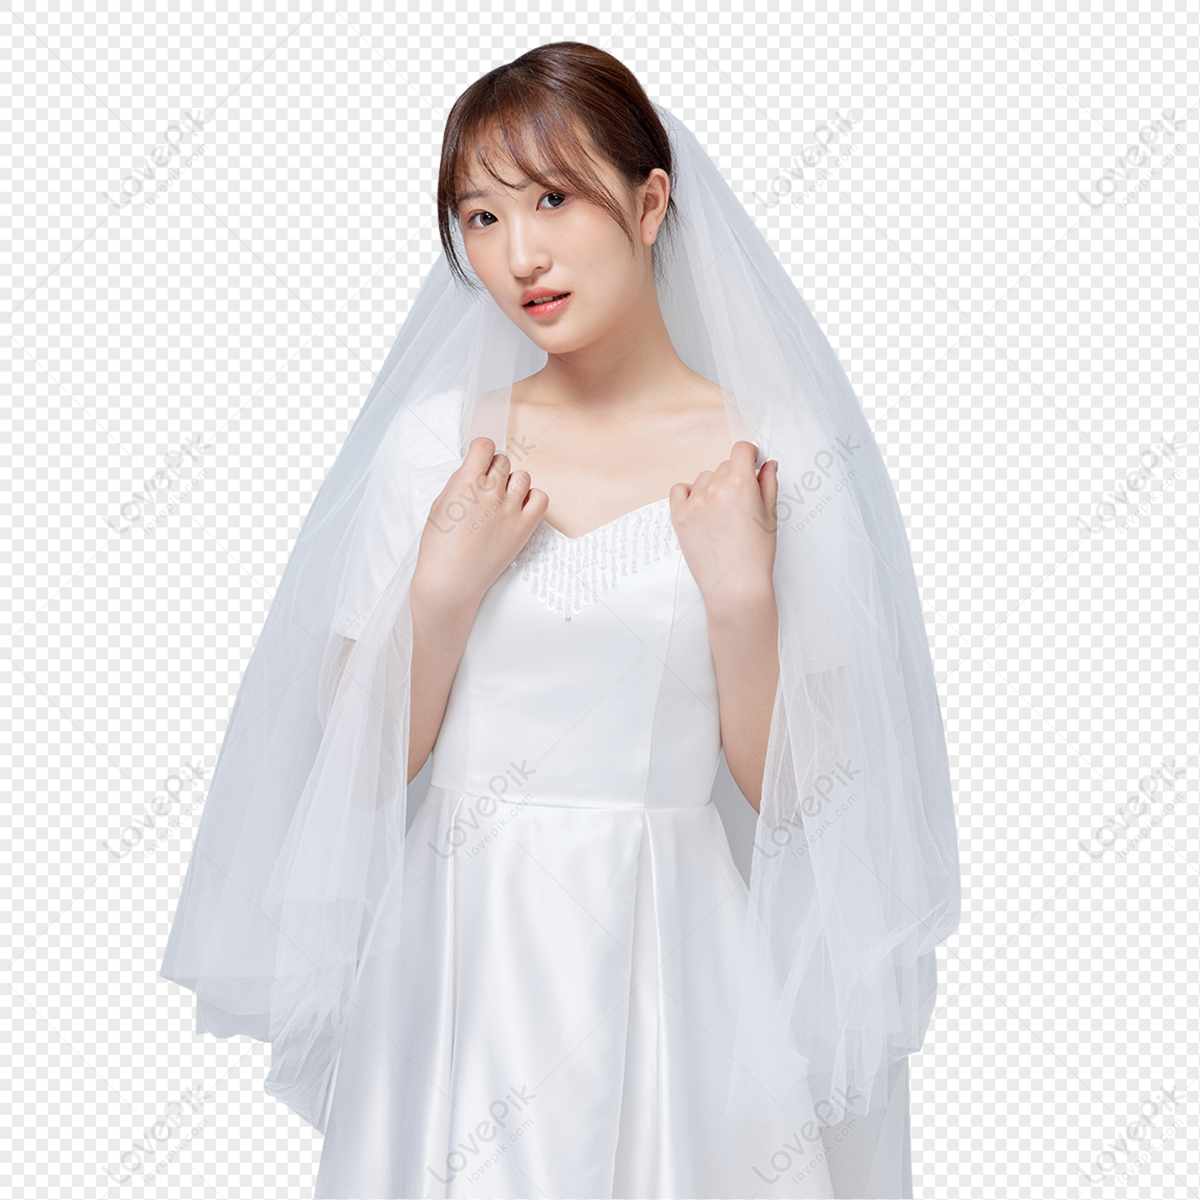 Cô gái tối giản Hàn Quốc trong hình ảnh đám cưới sẽ làm bạn tin rằng đơn giản vẫn là cách tốt nhất để thể hiện vẻ đẹp trong ngày hạnh phúc nhất của bạn. Những bức hình tối giản nhưng đầy lãng mạn sẽ đem lại cho bạn cảm giác dễ chịu và tự tin nhất.